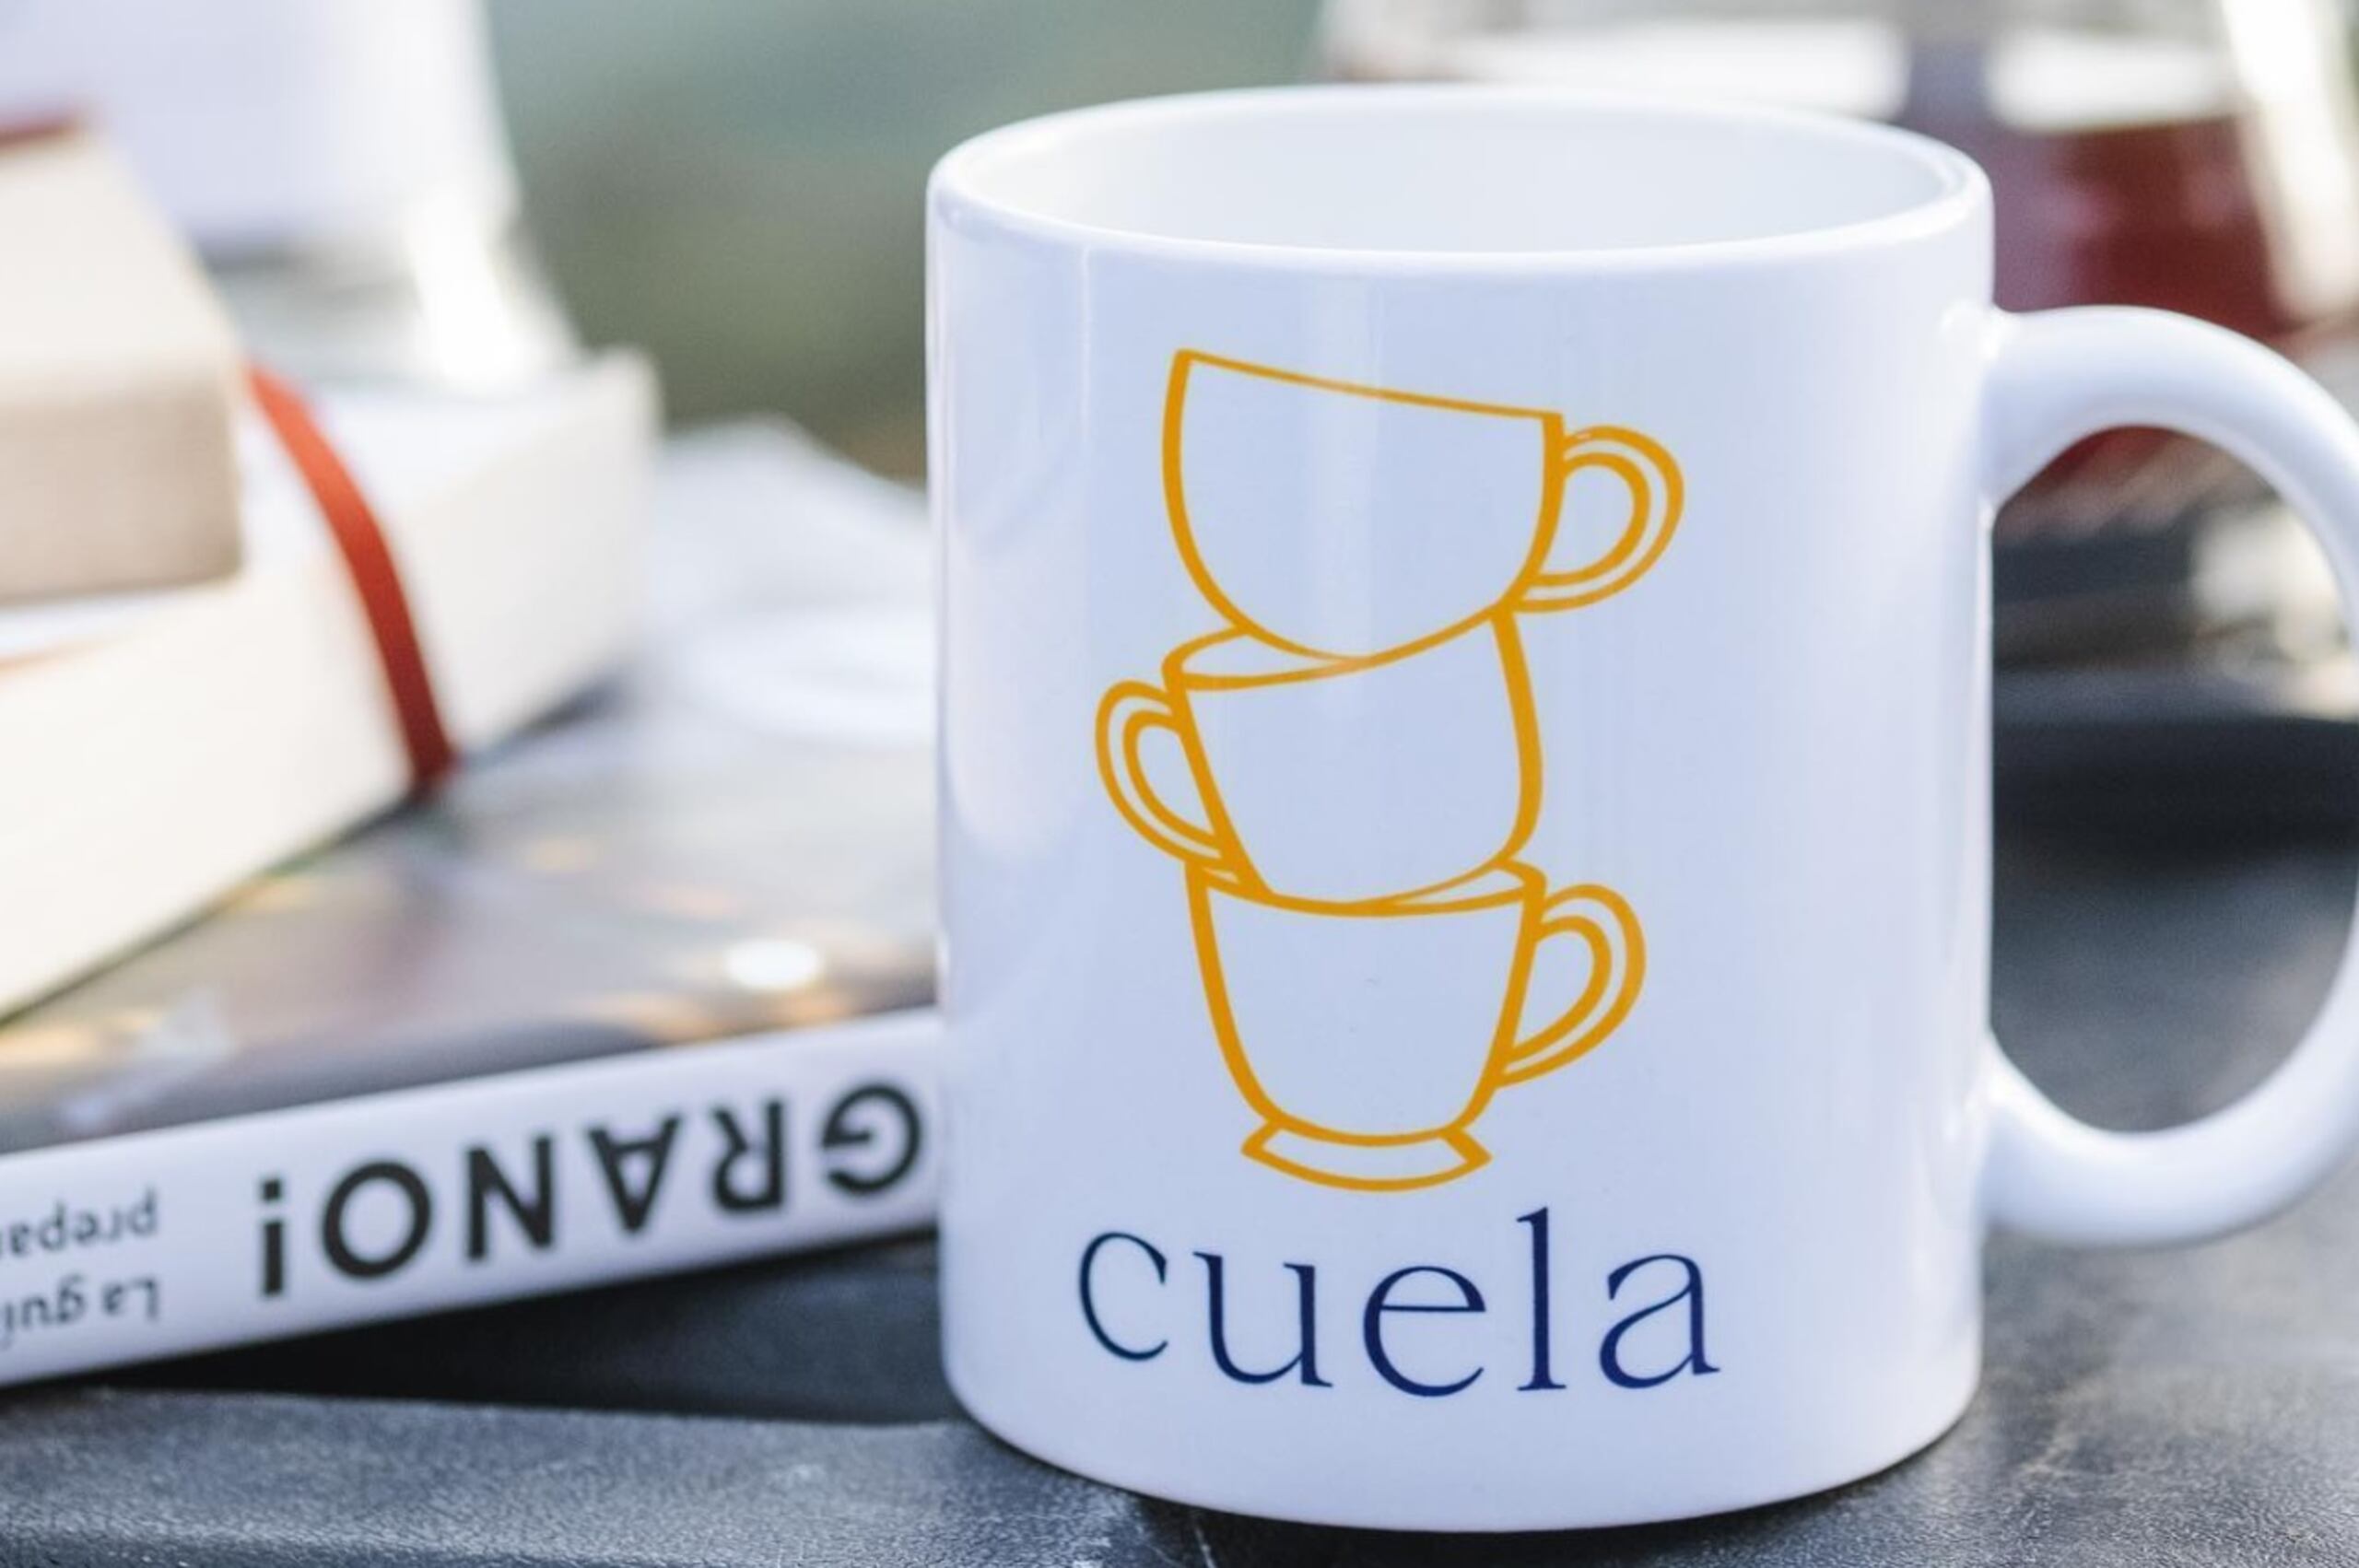 El negocio Cuela, que inició como una plataforma cibernética para la venta de café puertorriqueño, abrió sus puertas hace dos semanas.